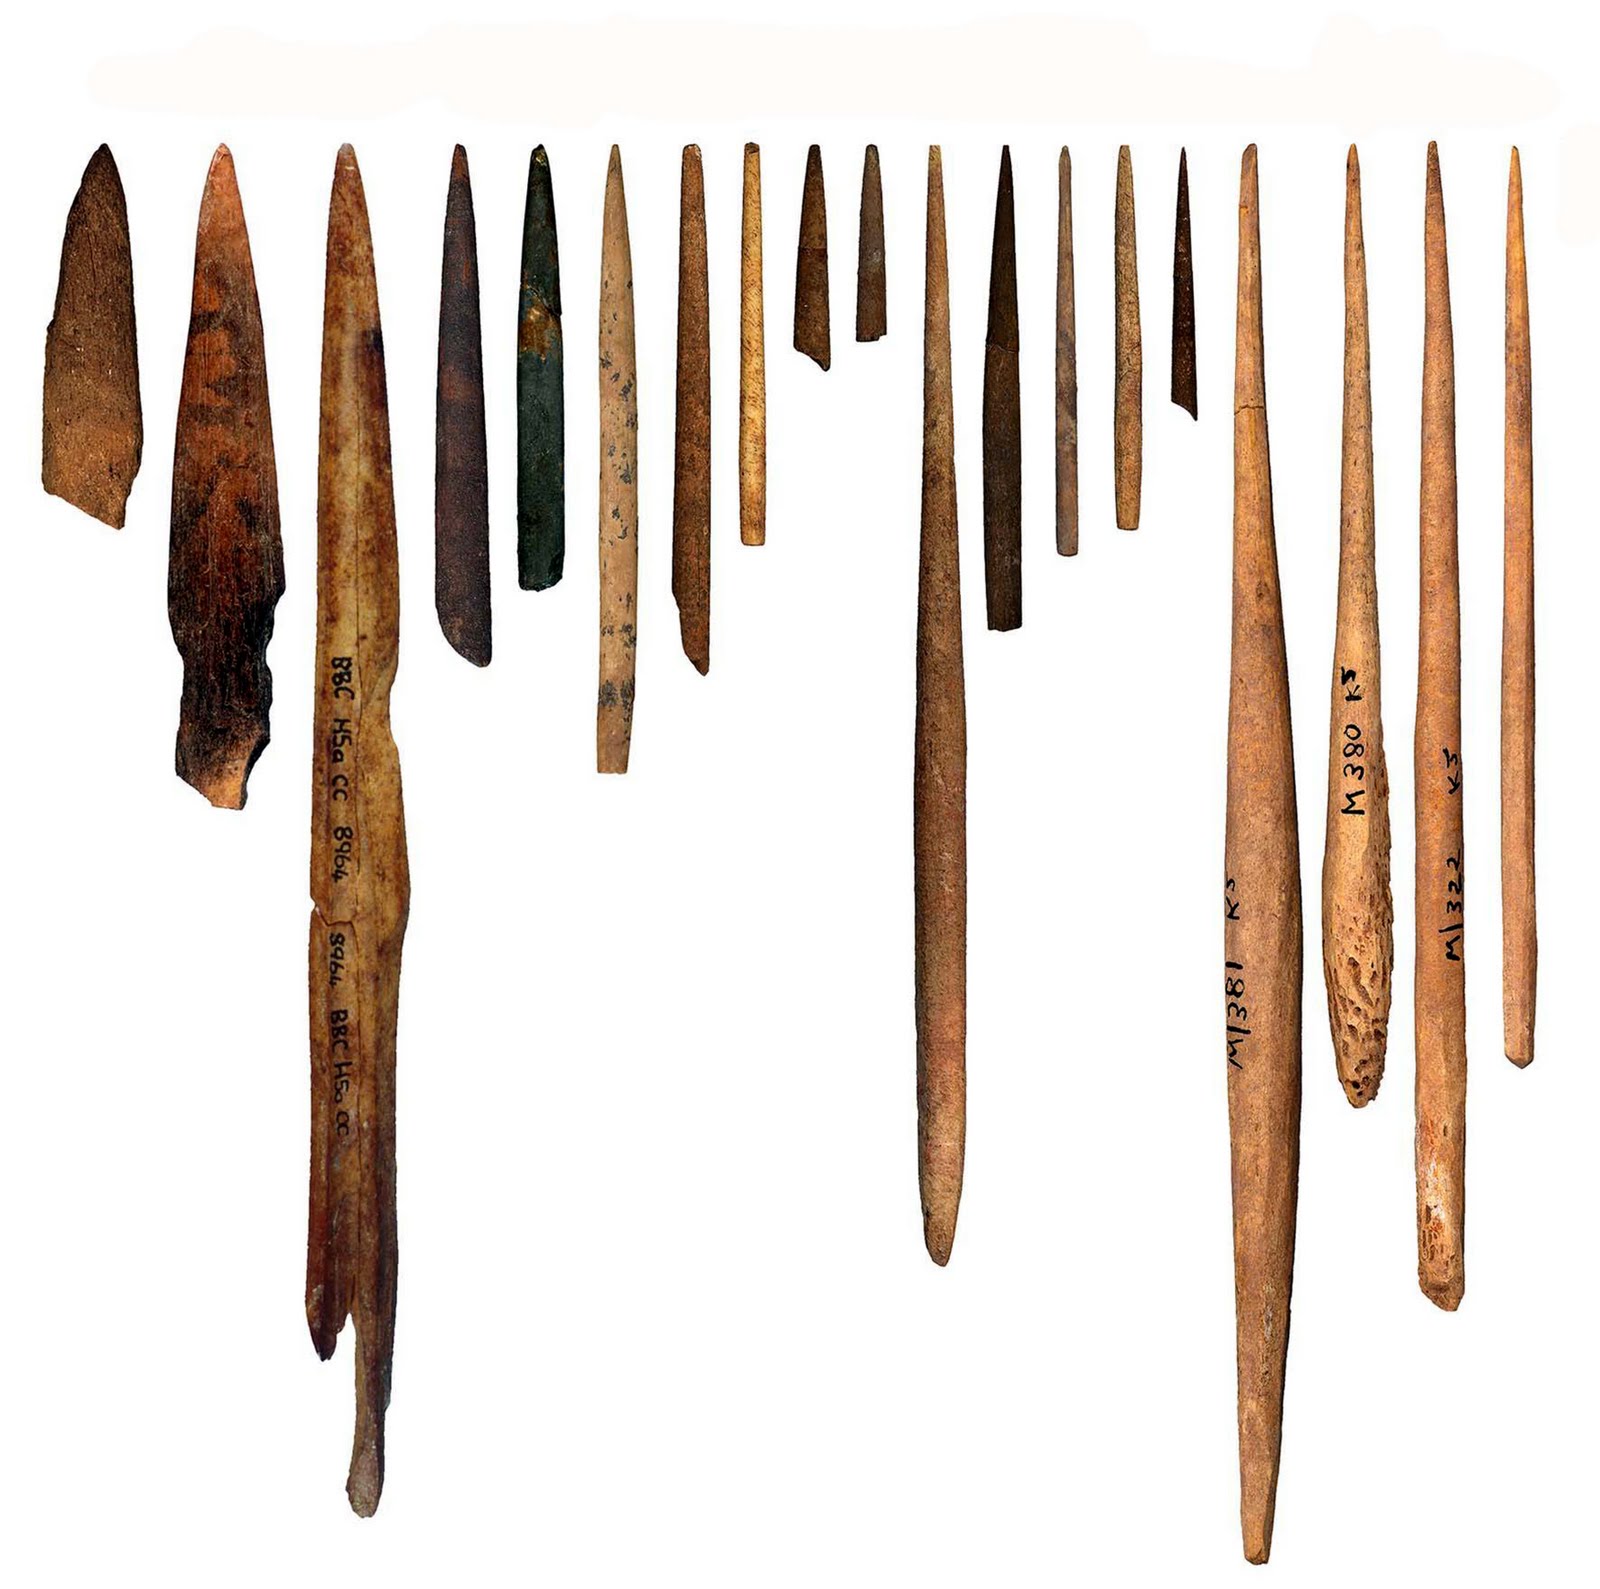 Первобытные инструменты. Вкладышевые орудия мезолита. Орудие мезолита лук и стрелы. Палка копалка древних людей. Костяной гарпун мезолит.